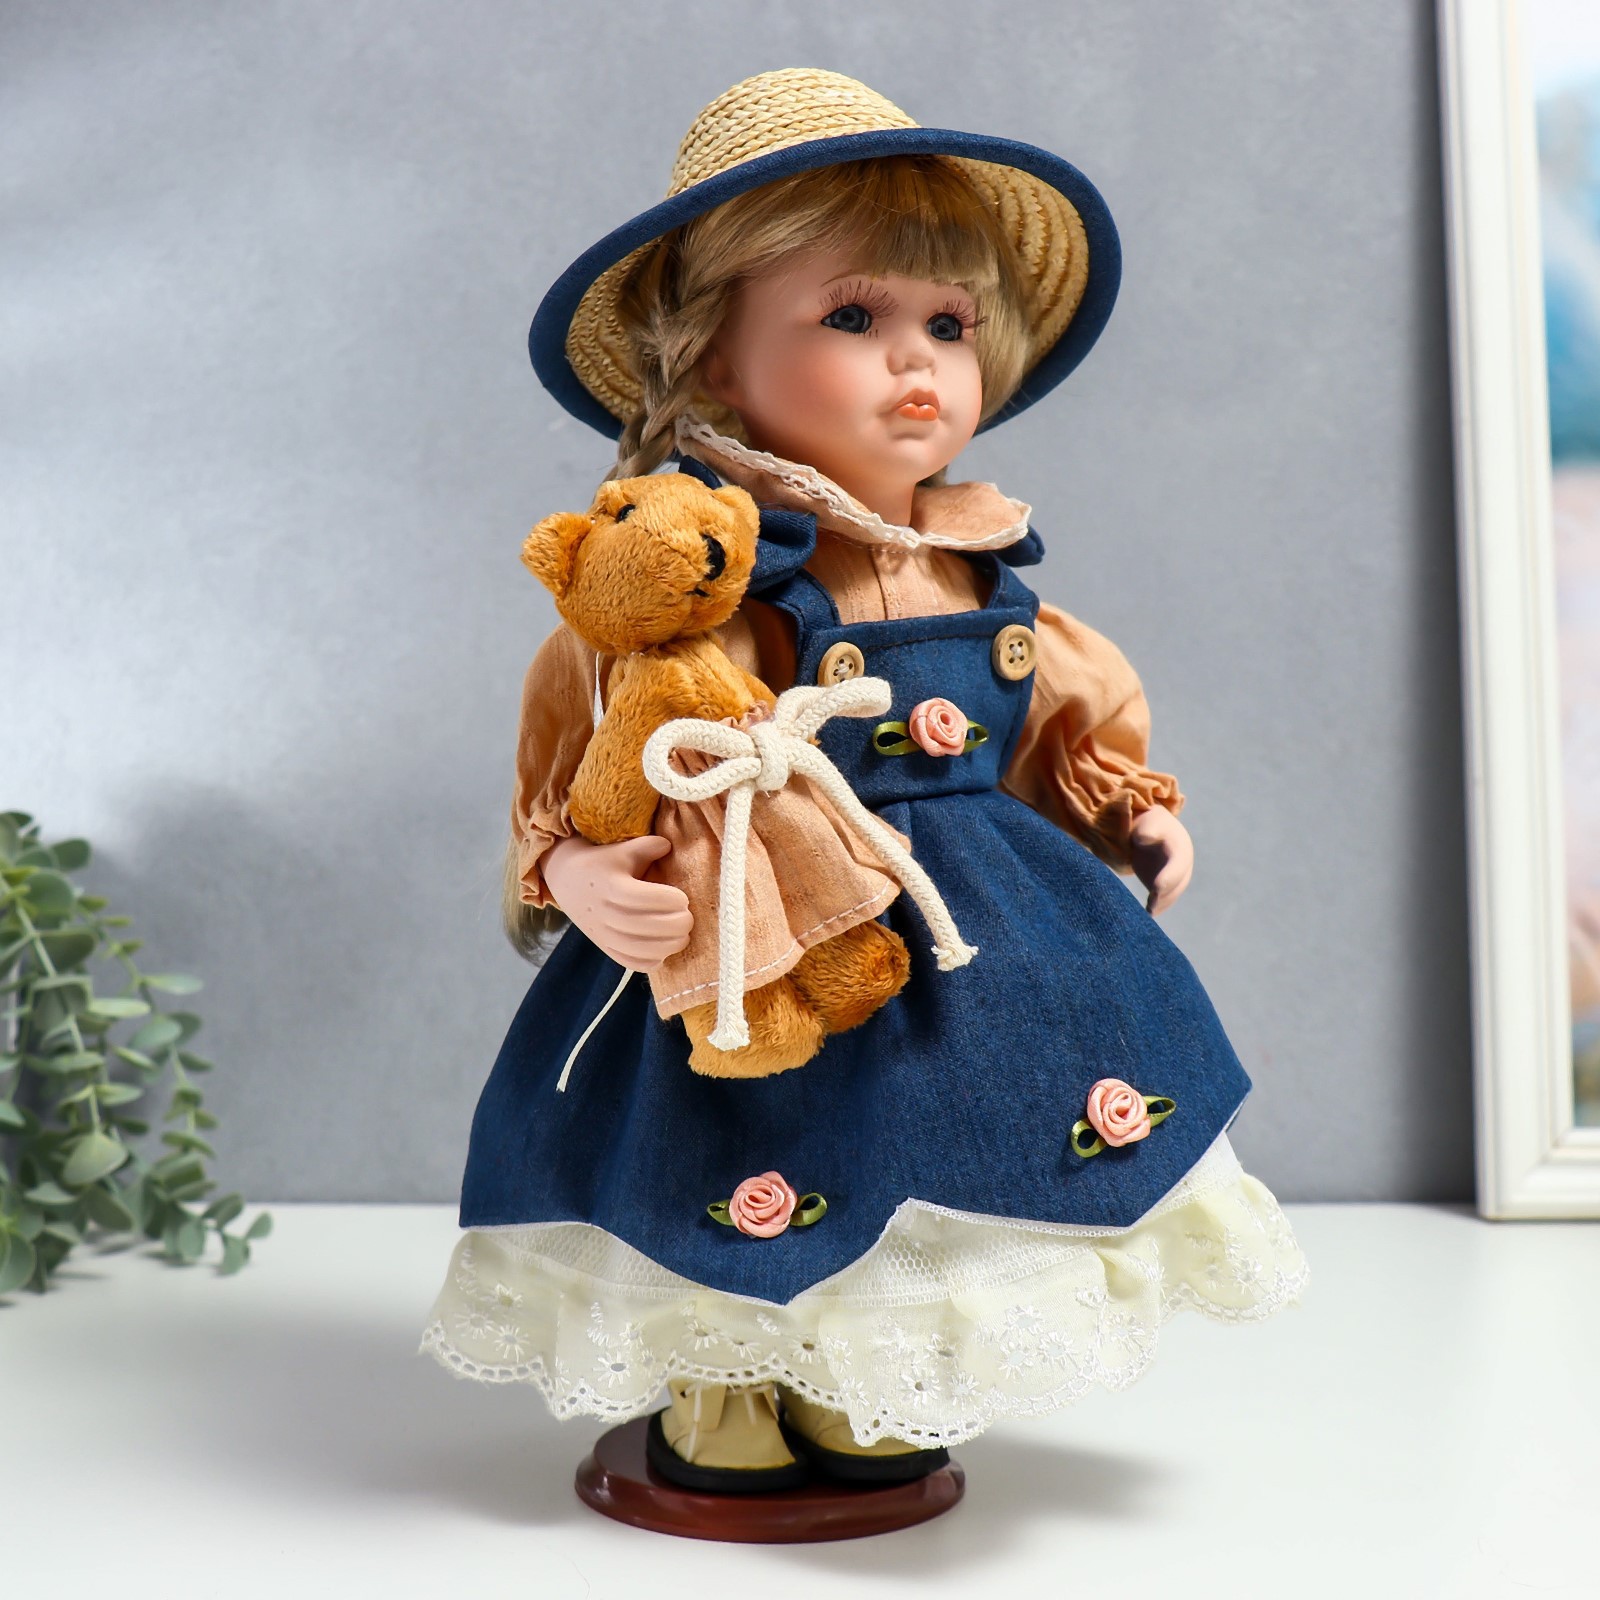 Кукла коллекционная Зимнее волшебство керамика «Сьюзи в джинсовом платье шляпке и с мишкой» 30 см - фото 2